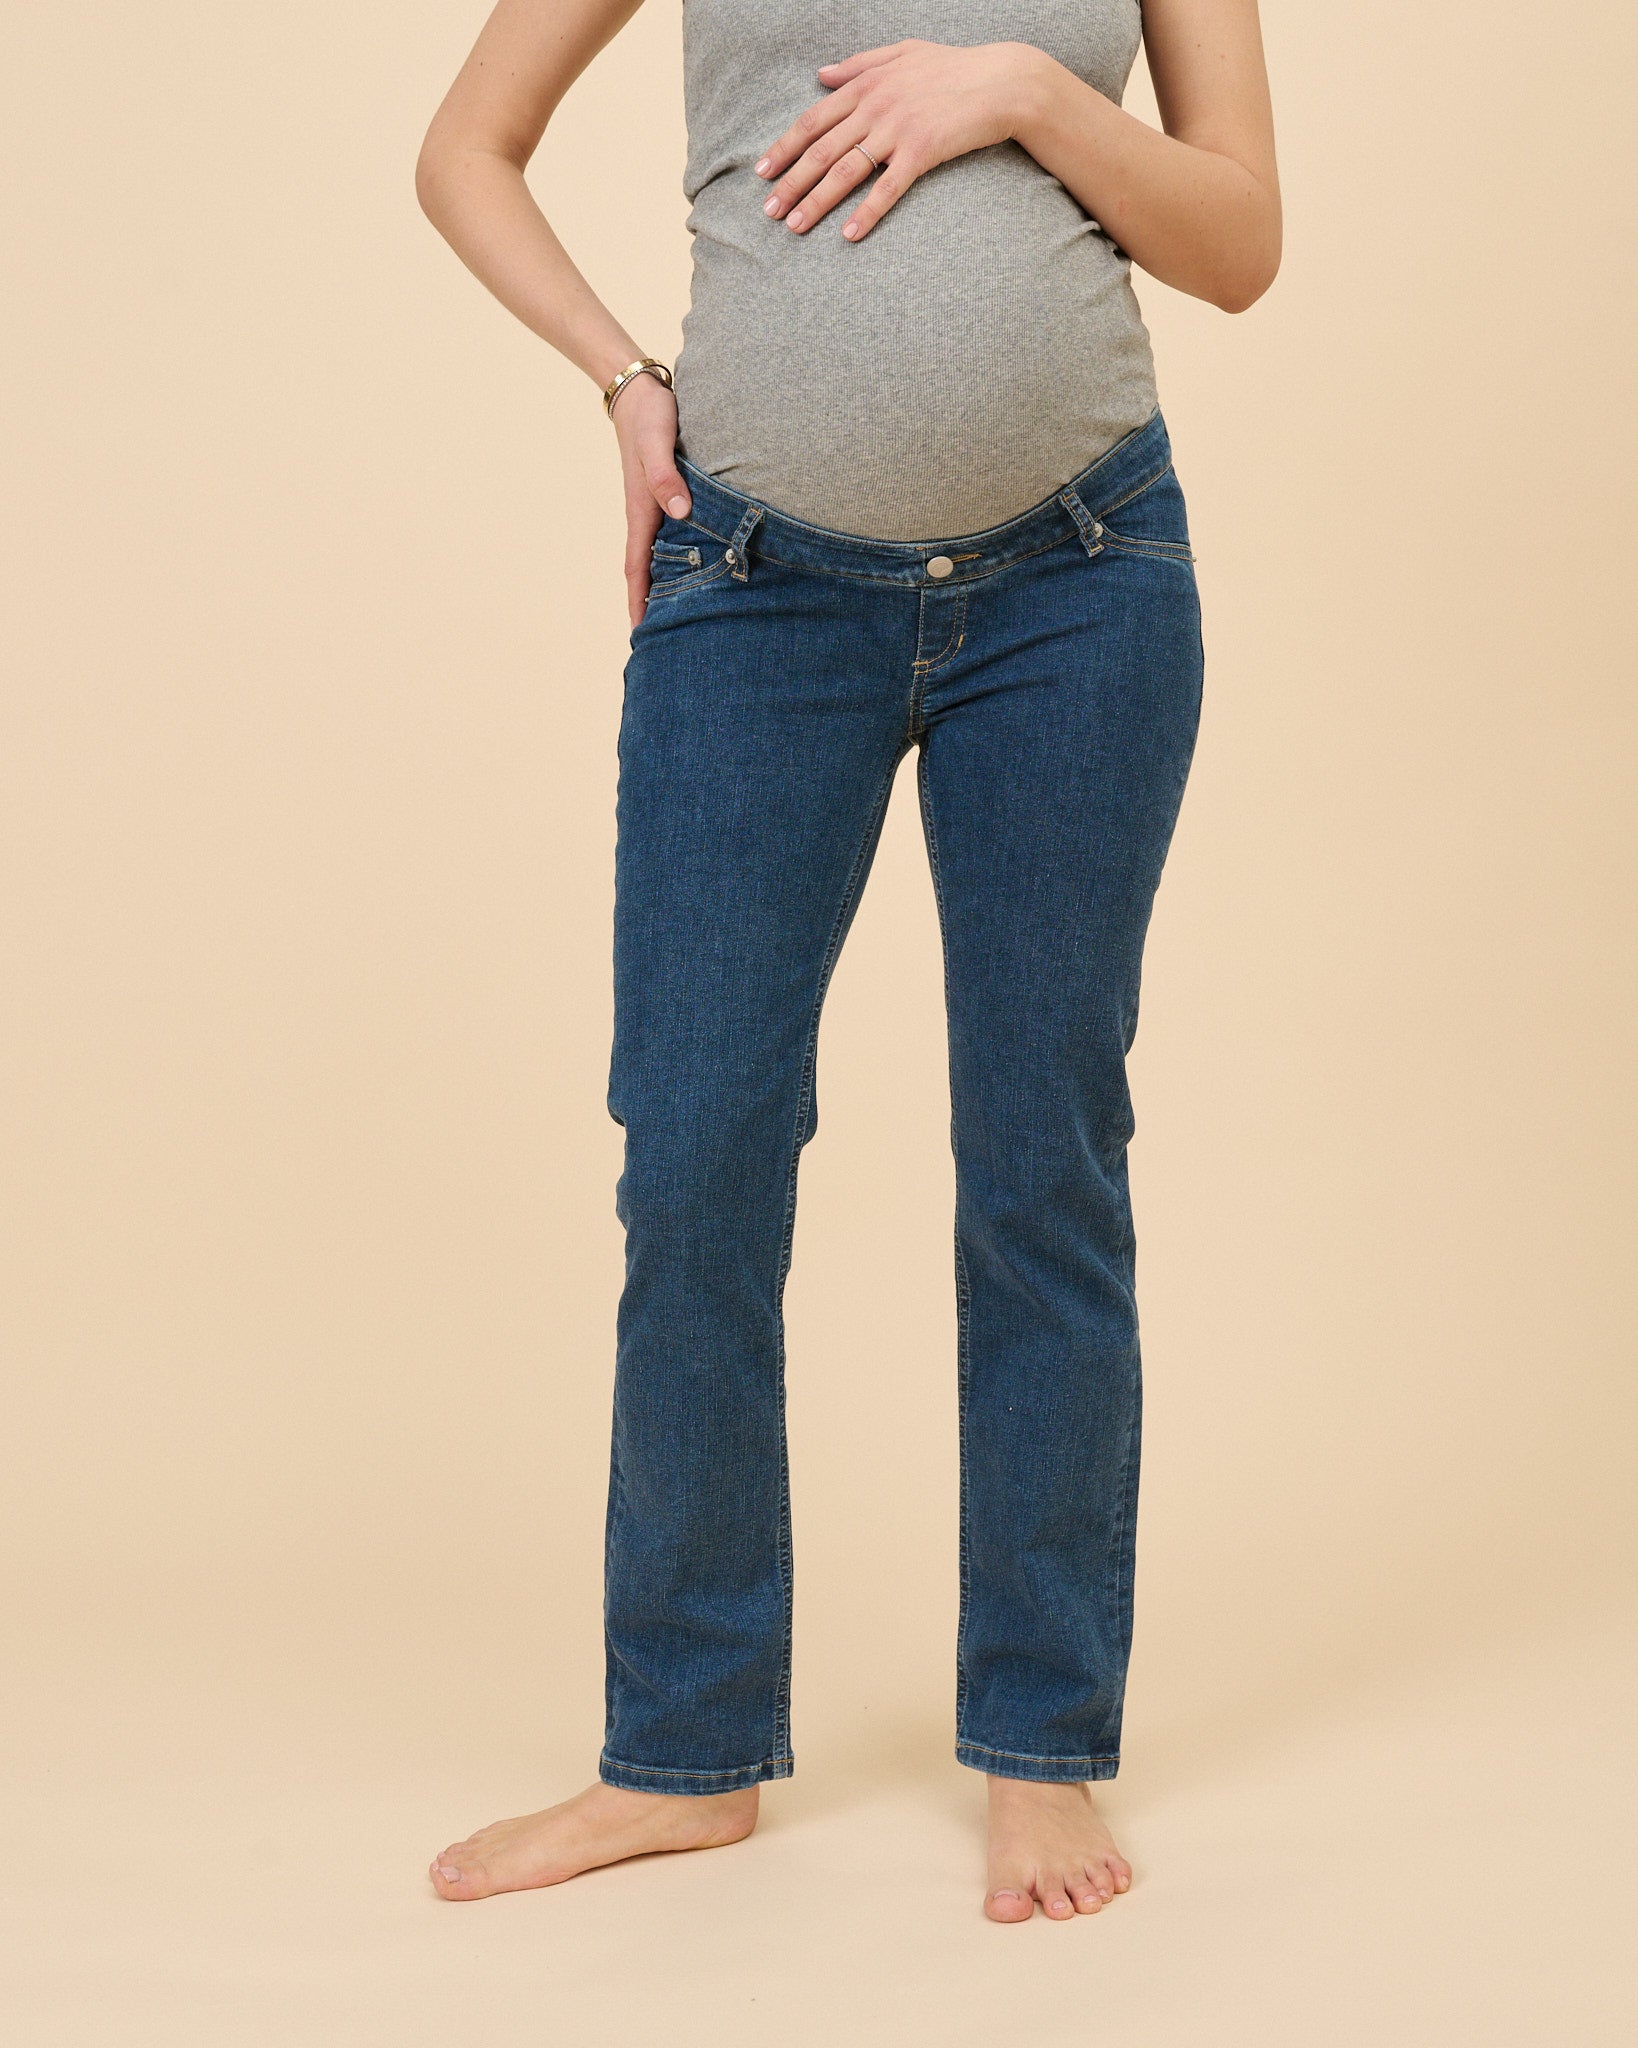 Buy Maternity Jeans- Wide Leg - Blue